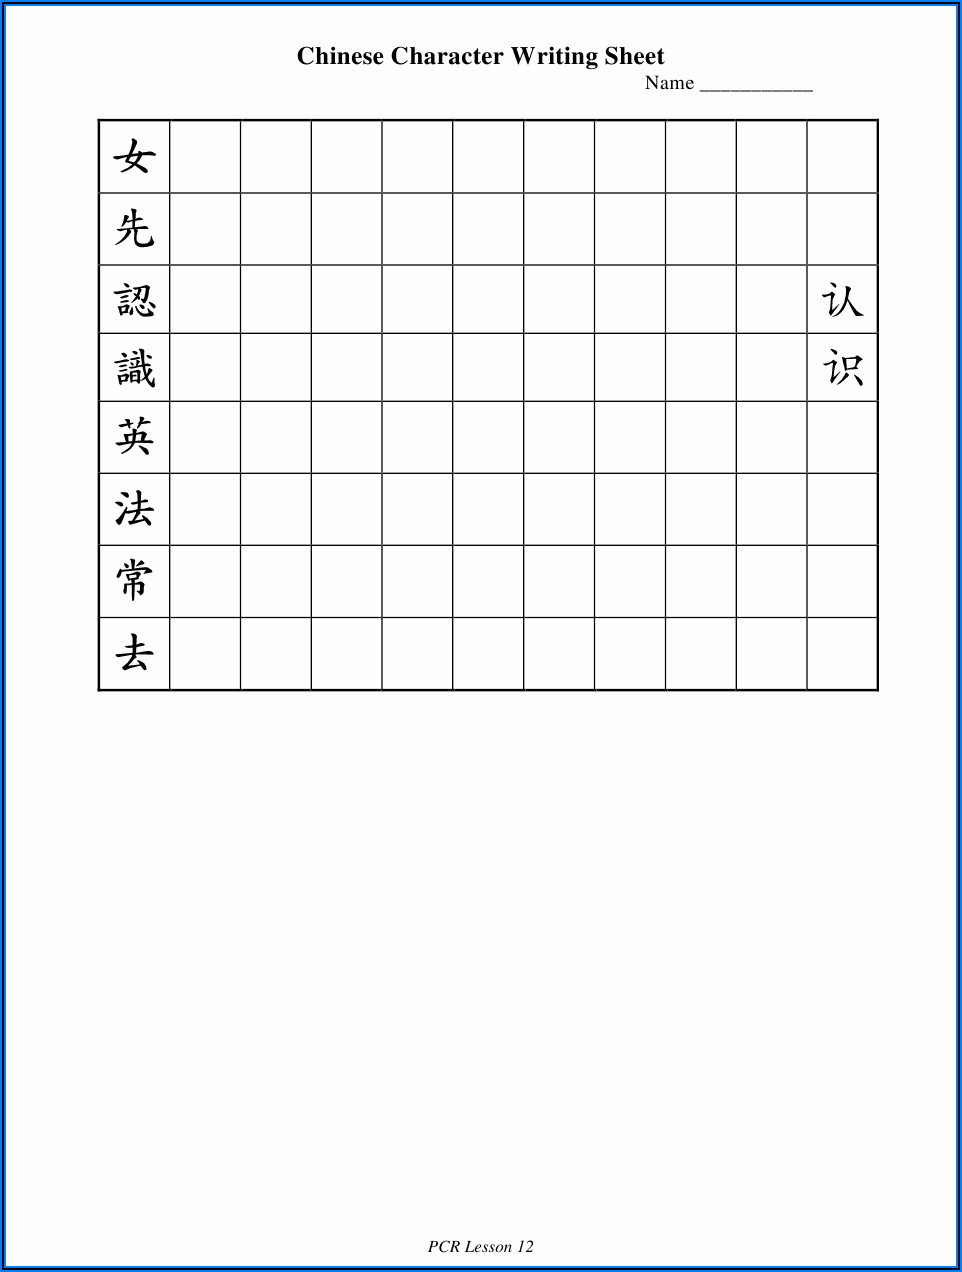 Chinese Character Writing Sheet Pdf